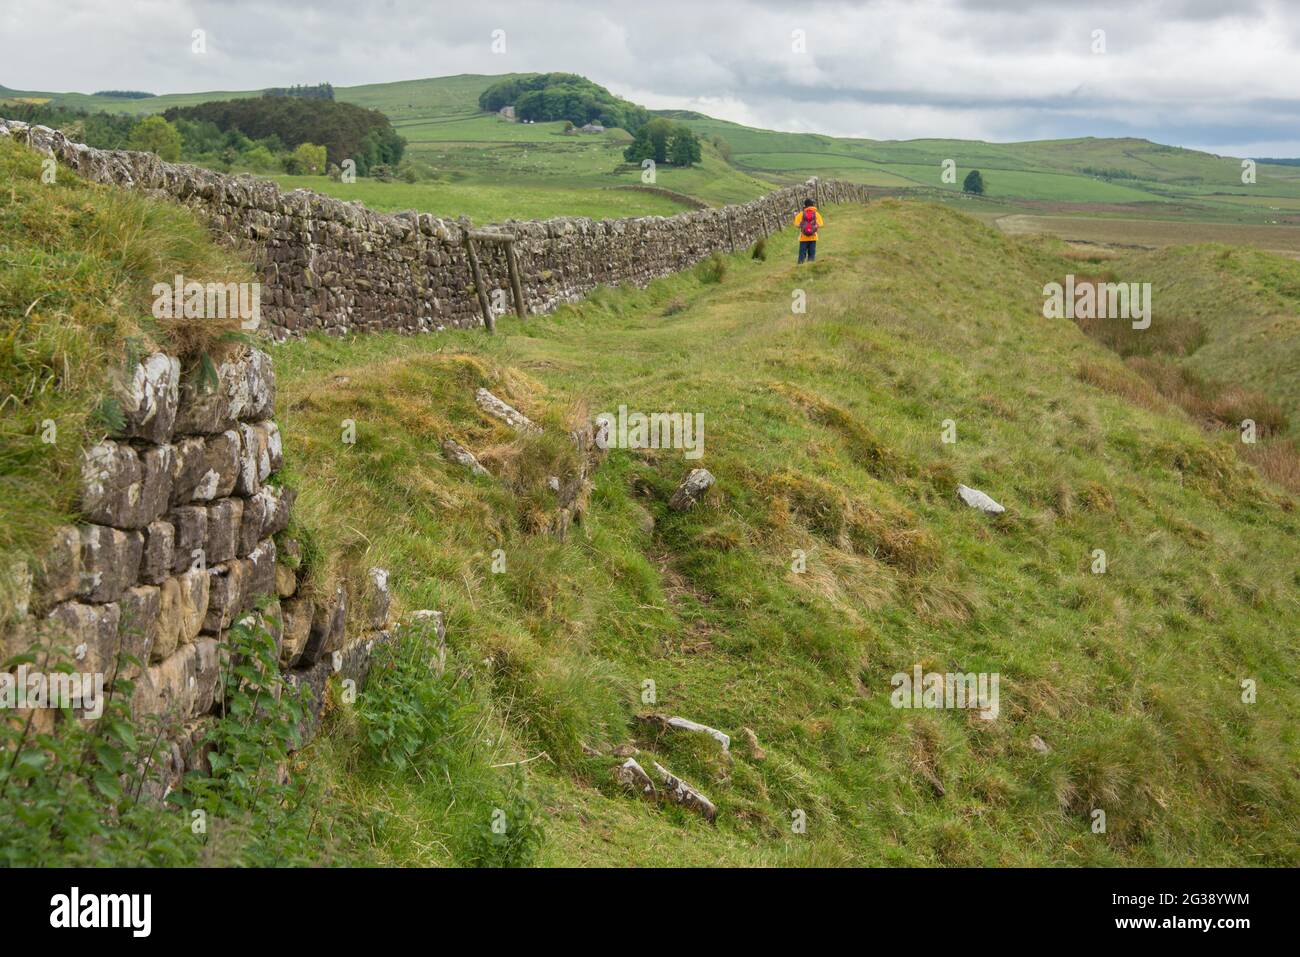 Vestiges d'un segment du mur d'Hadrien, l'ancien mur frontalier romain traversant le nord de l'Angleterre près de Milecastle 33 à l'est du fort romain Housesteads. Longeant l'ensemble du site classé au patrimoine mondial de l'UNESCO, le chemin du mur d'Hadrien est l'un des sentiers de randonnée les plus populaires d'Angleterre. Banque D'Images